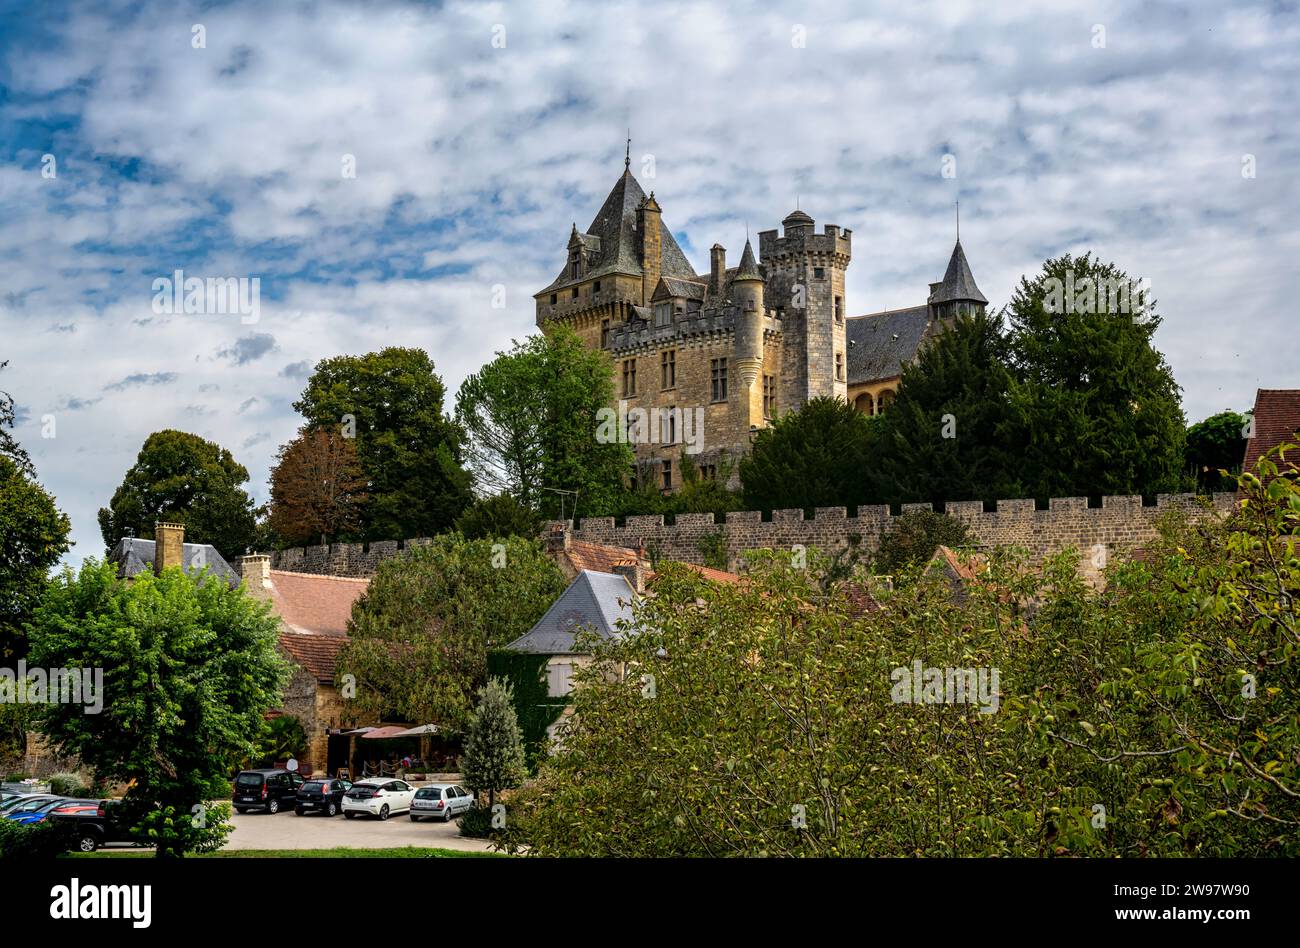 Monfort Castle, Chateau de Montfort, Dordogne, France Stock Photo